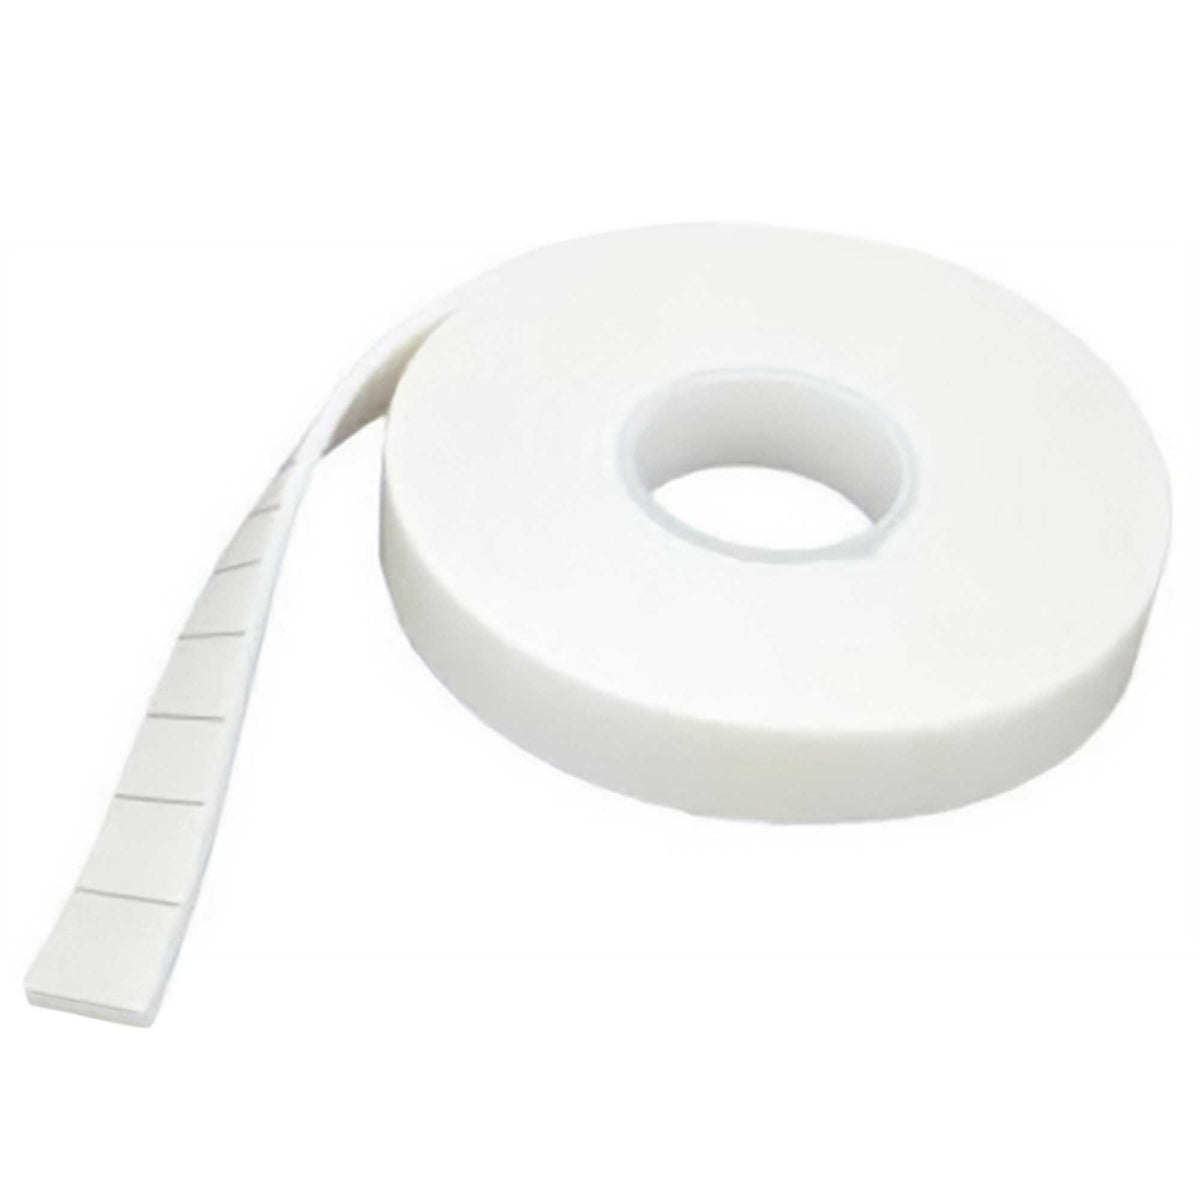 Self-Adhesive Foam Pads - 25mm x 25mm x 1mm - Bulk Roll